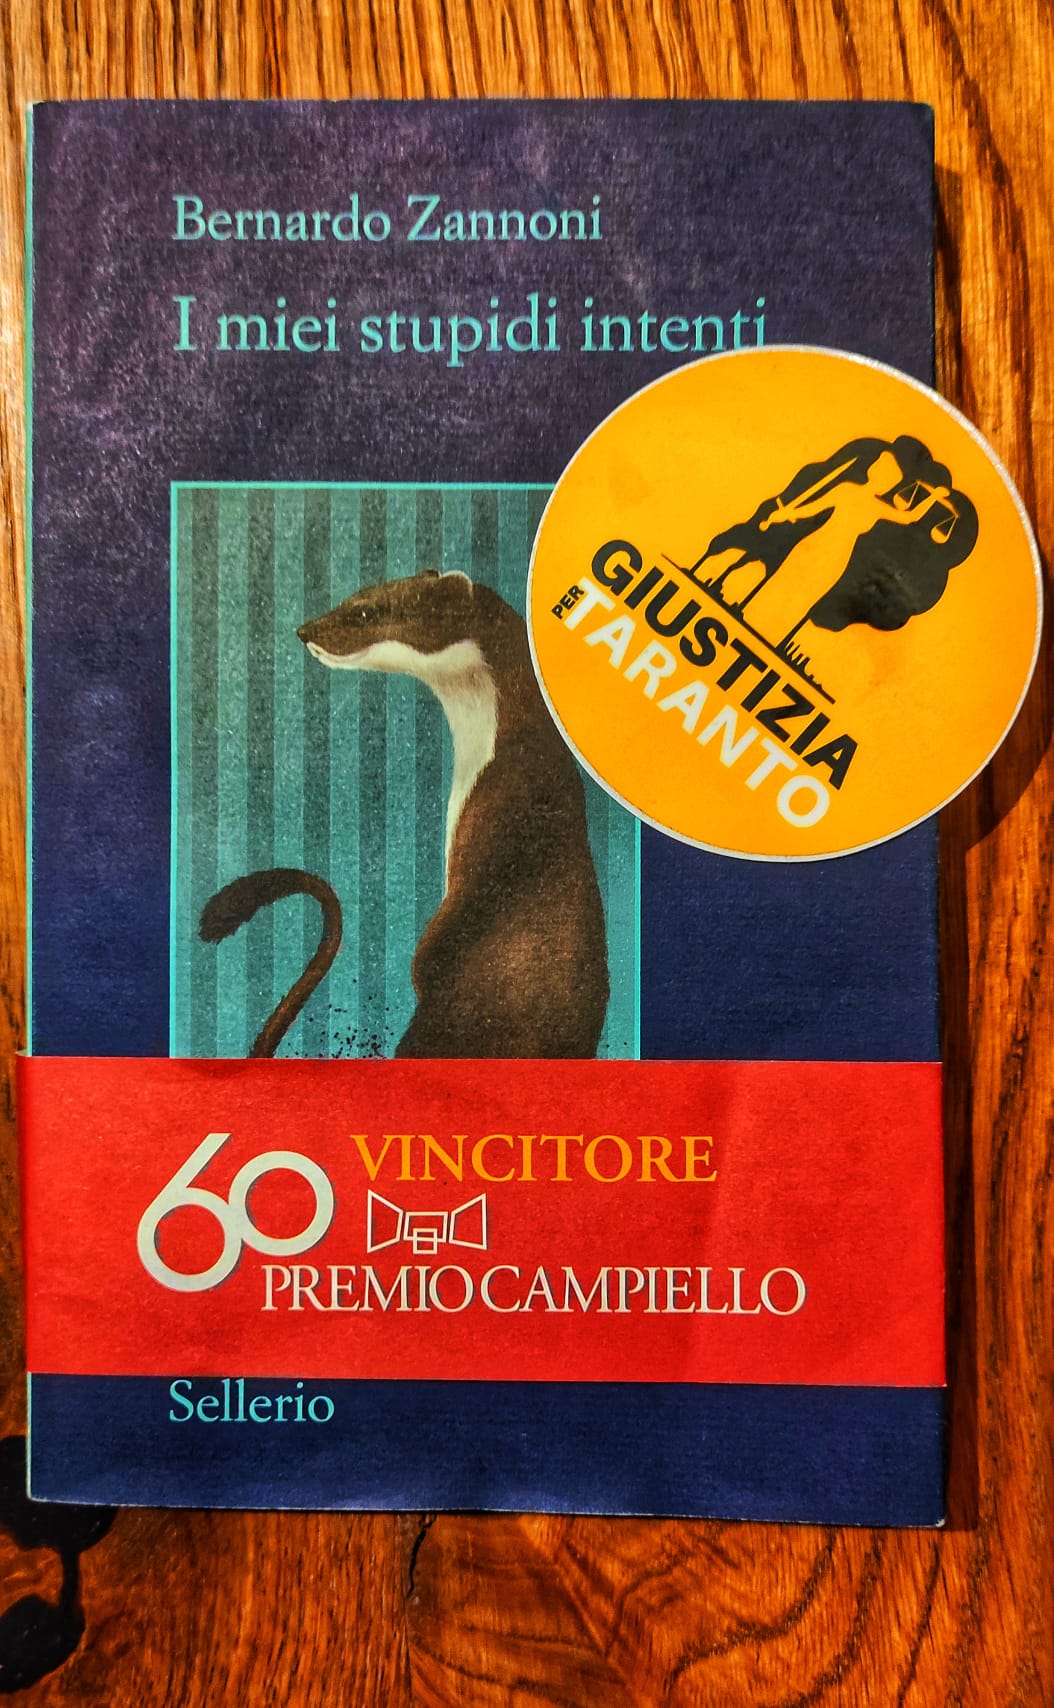 La recensione del premio Campiello, 'I miei stupidi intenti' - Giustizia  per Taranto